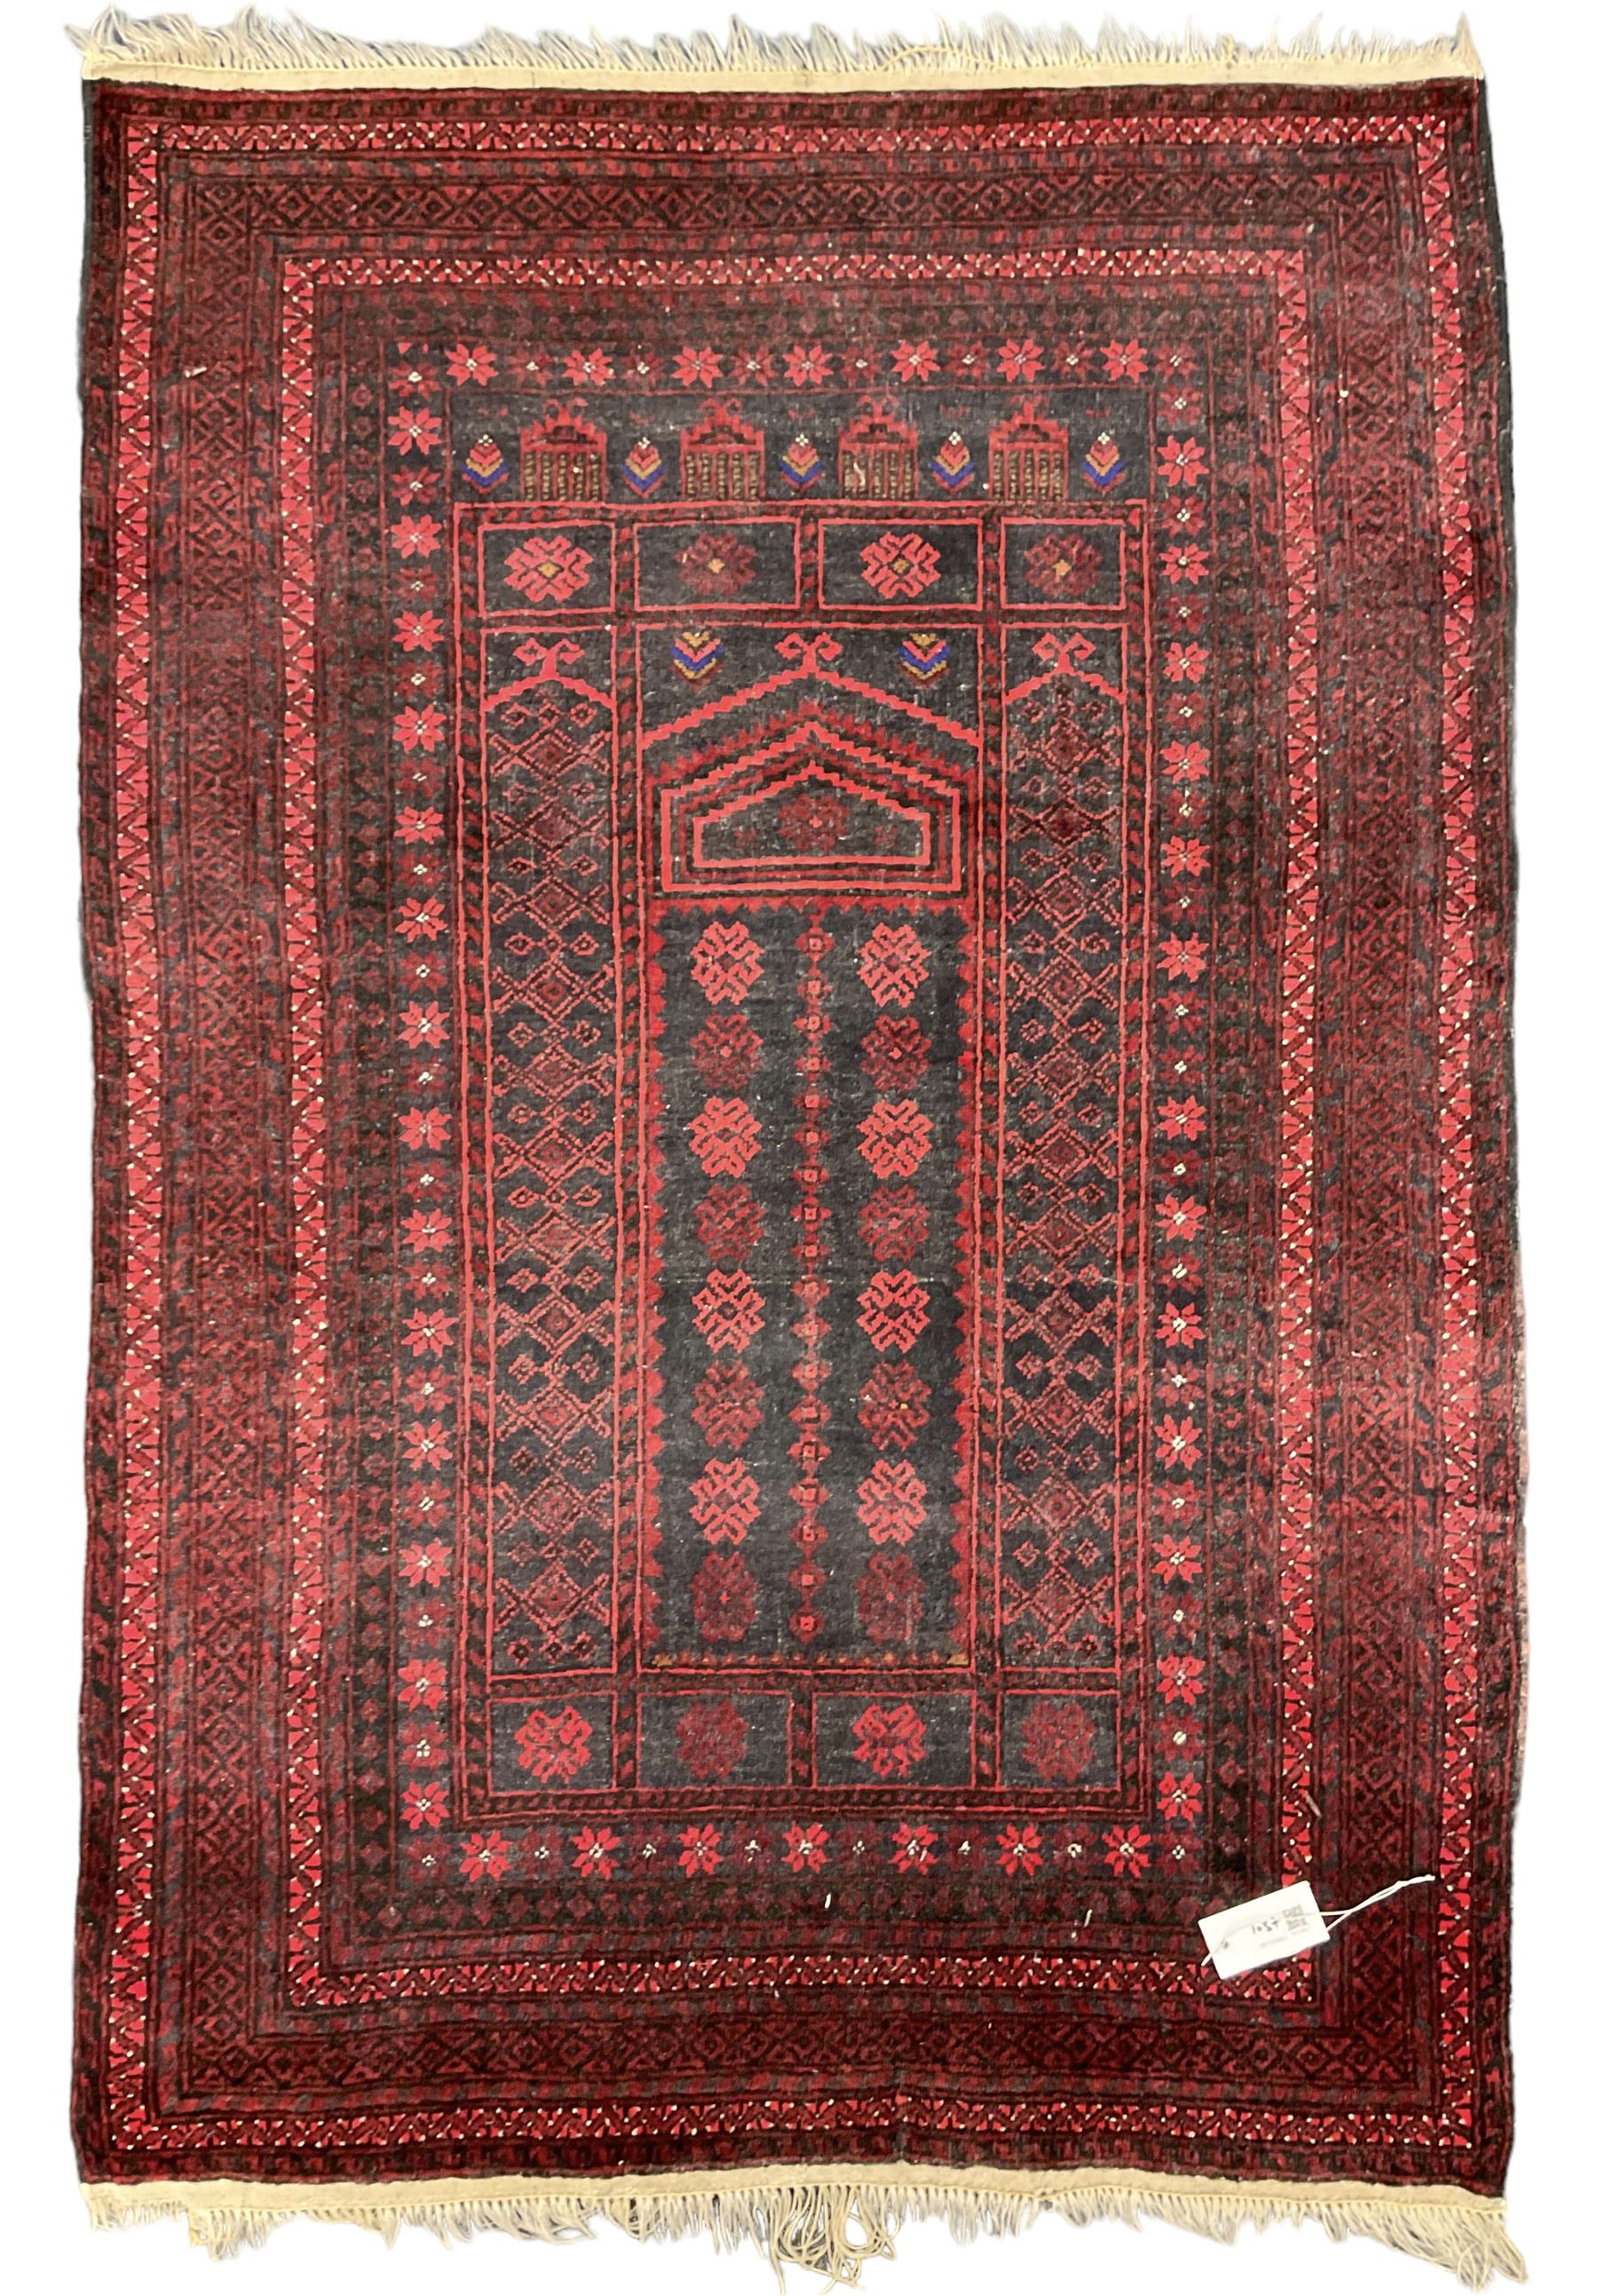 Persian indigo ground pray rug - Image 2 of 5